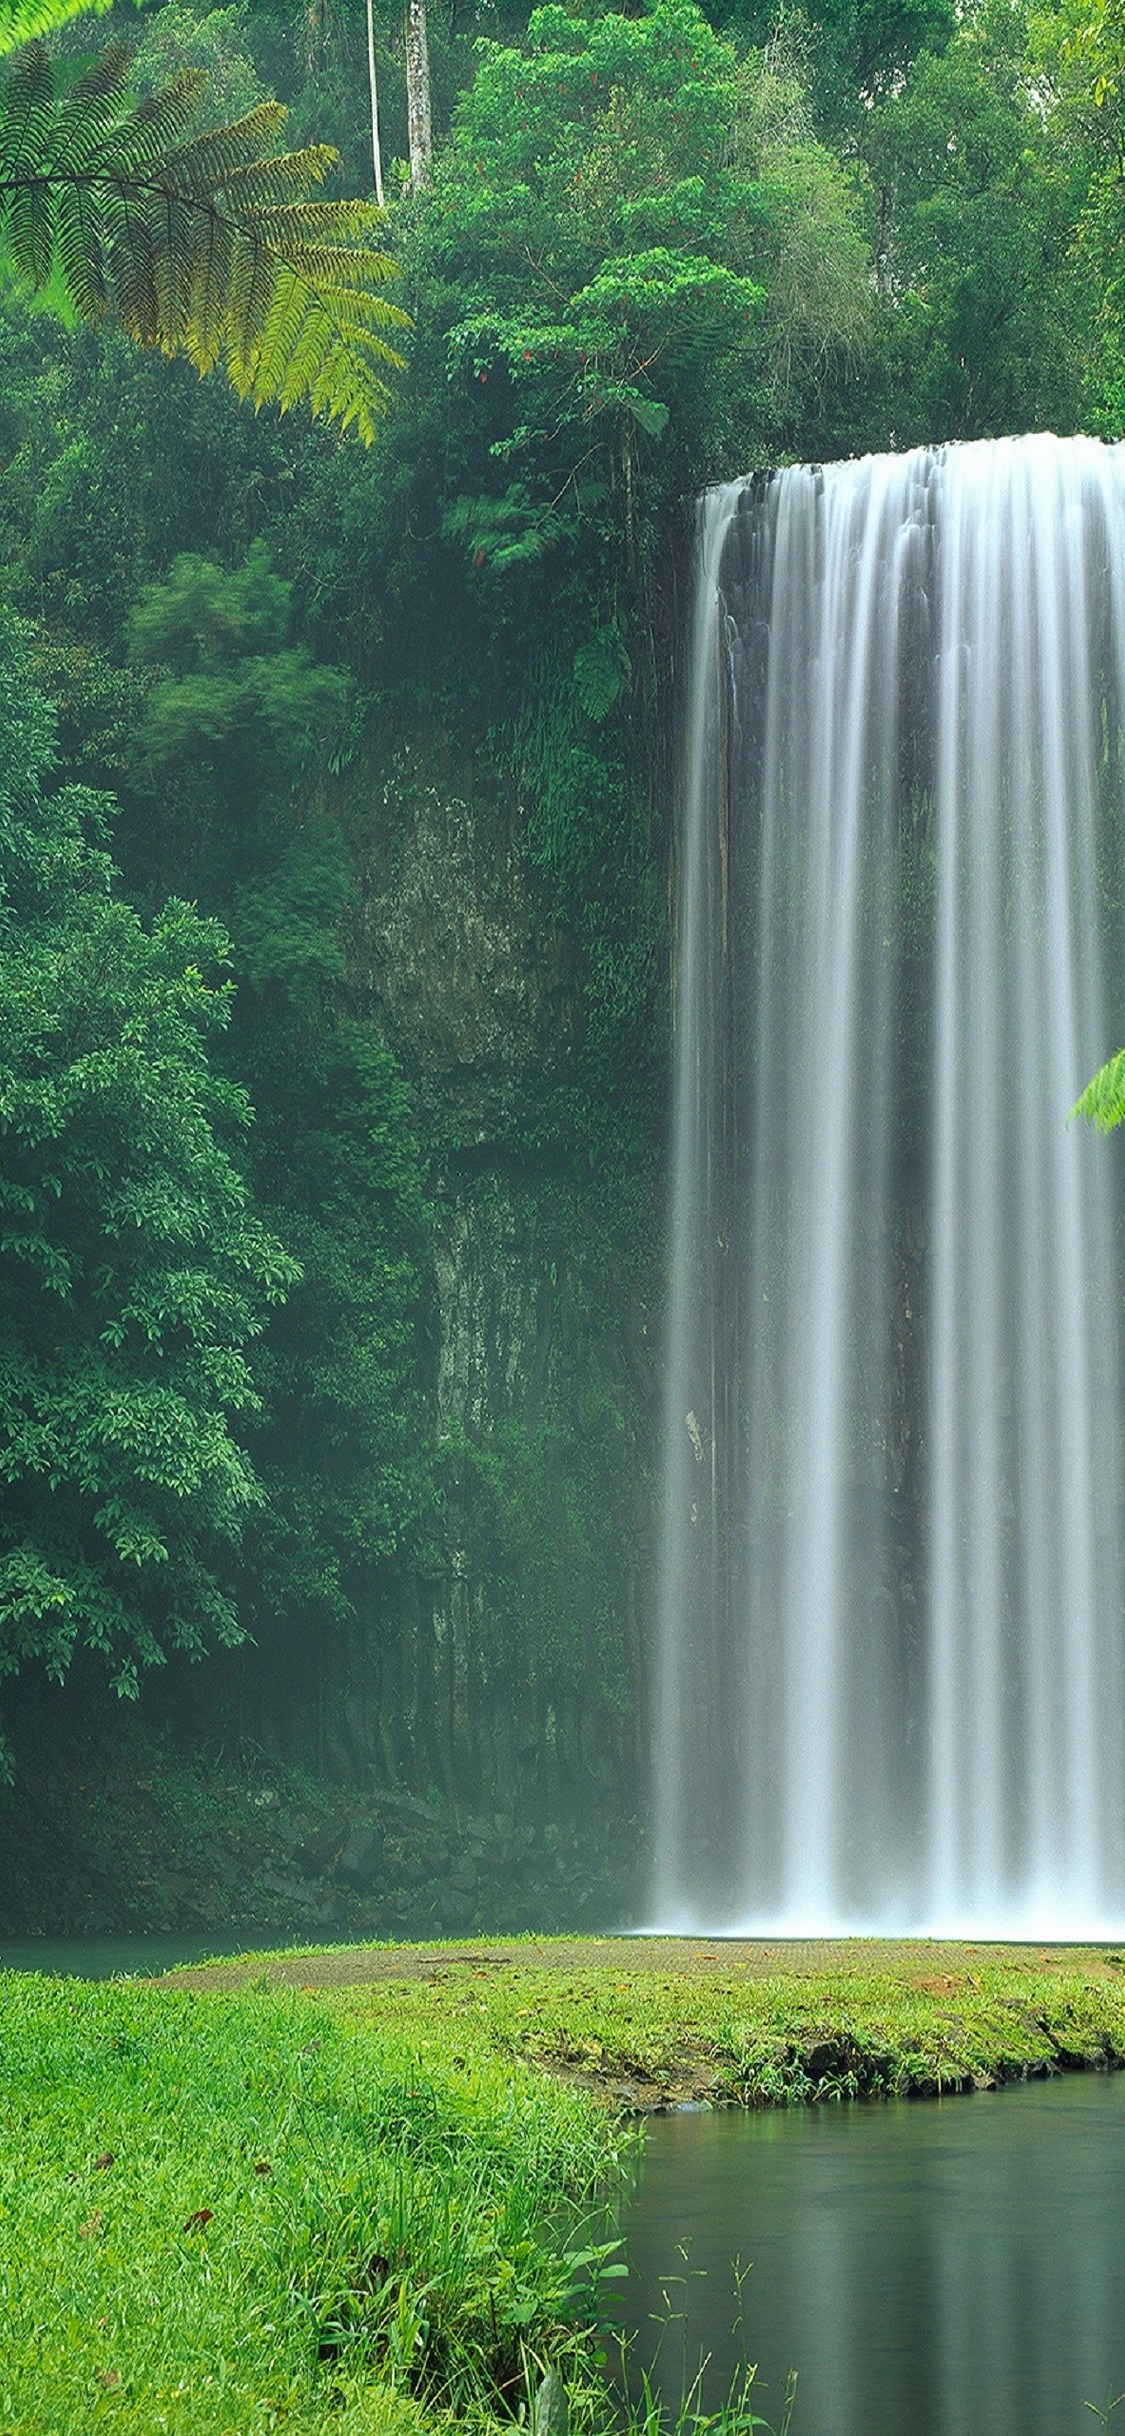 綺麗な滝と緑の自然 Iphone X スマホ壁紙 待ち受け スマラン